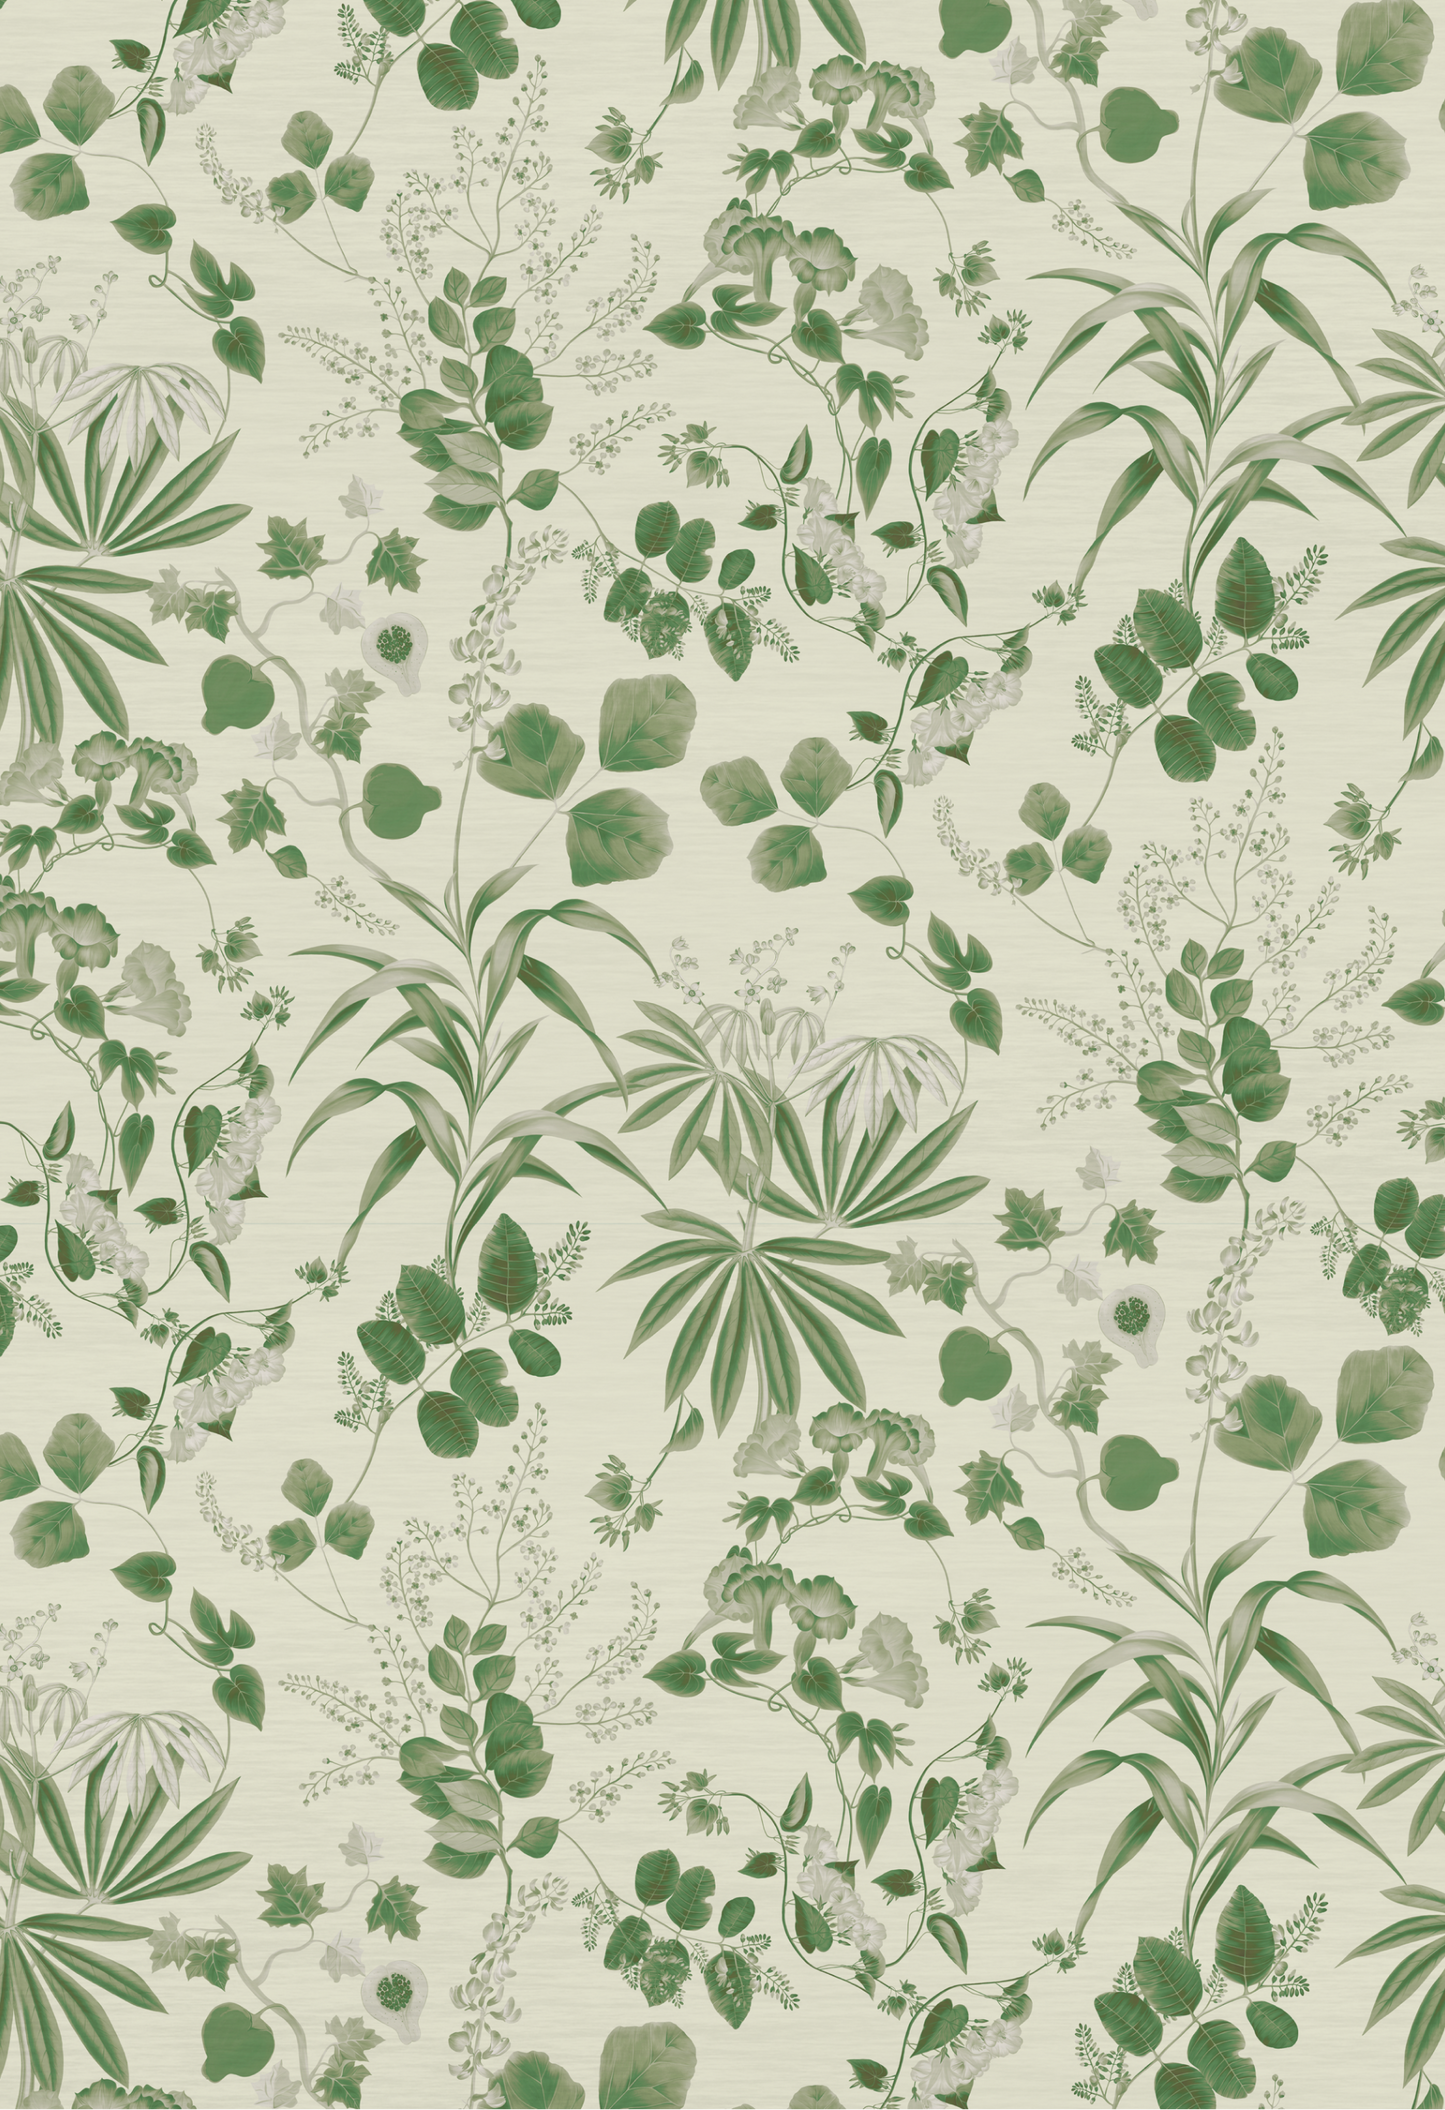 A green botanical pattern of Eden Wallpaper in Fern by Deus ex Gardenia.